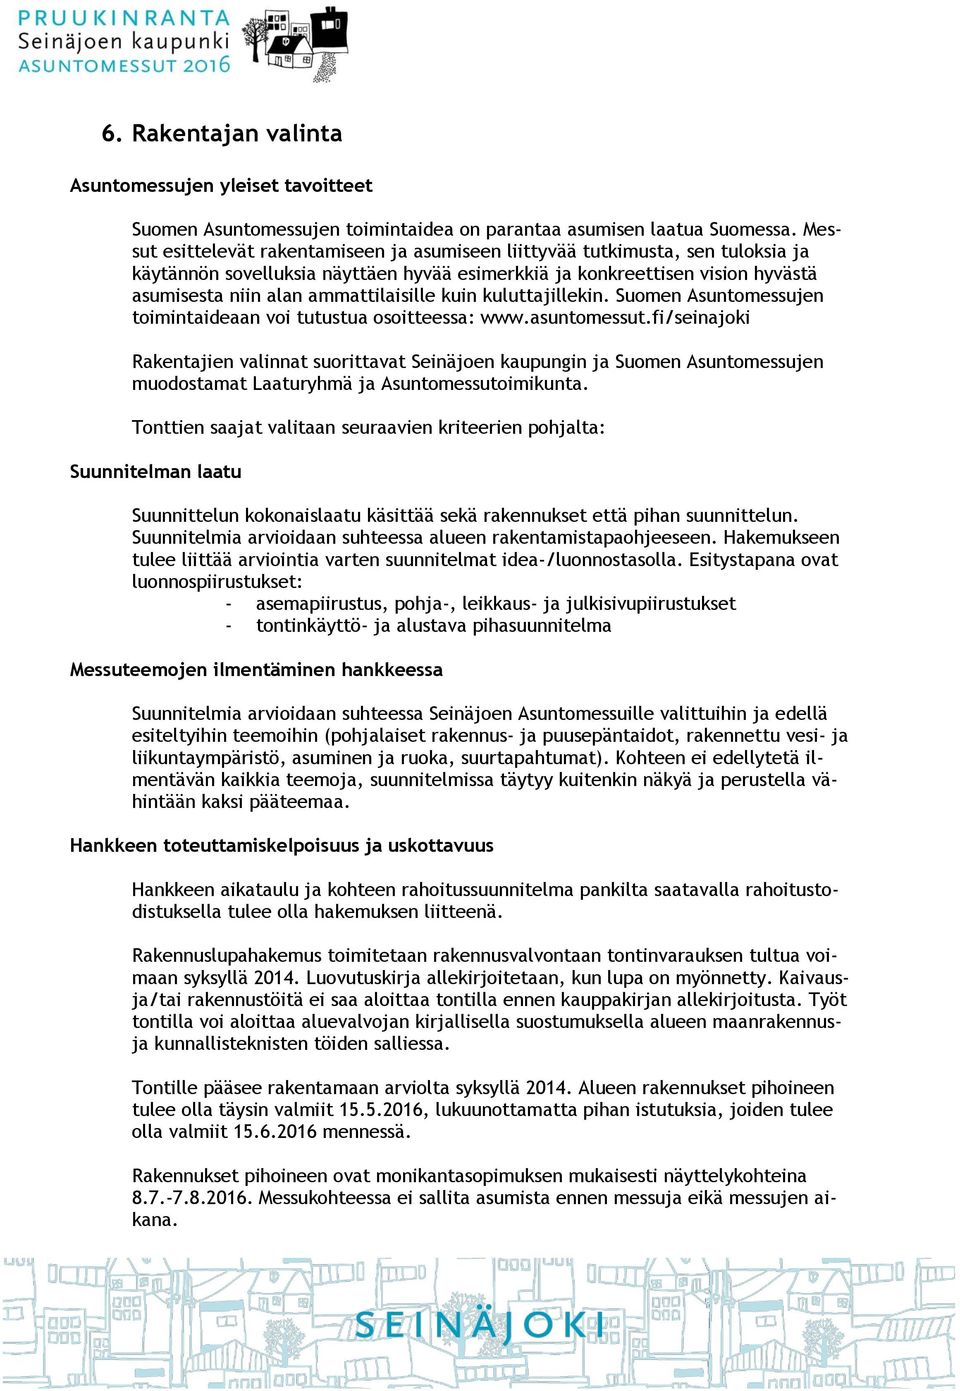 ammattilaisille kuin kuluttajillekin. Suomen Asuntomessujen toimintaideaan voi tutustua osoitteessa: www.asuntomessut.